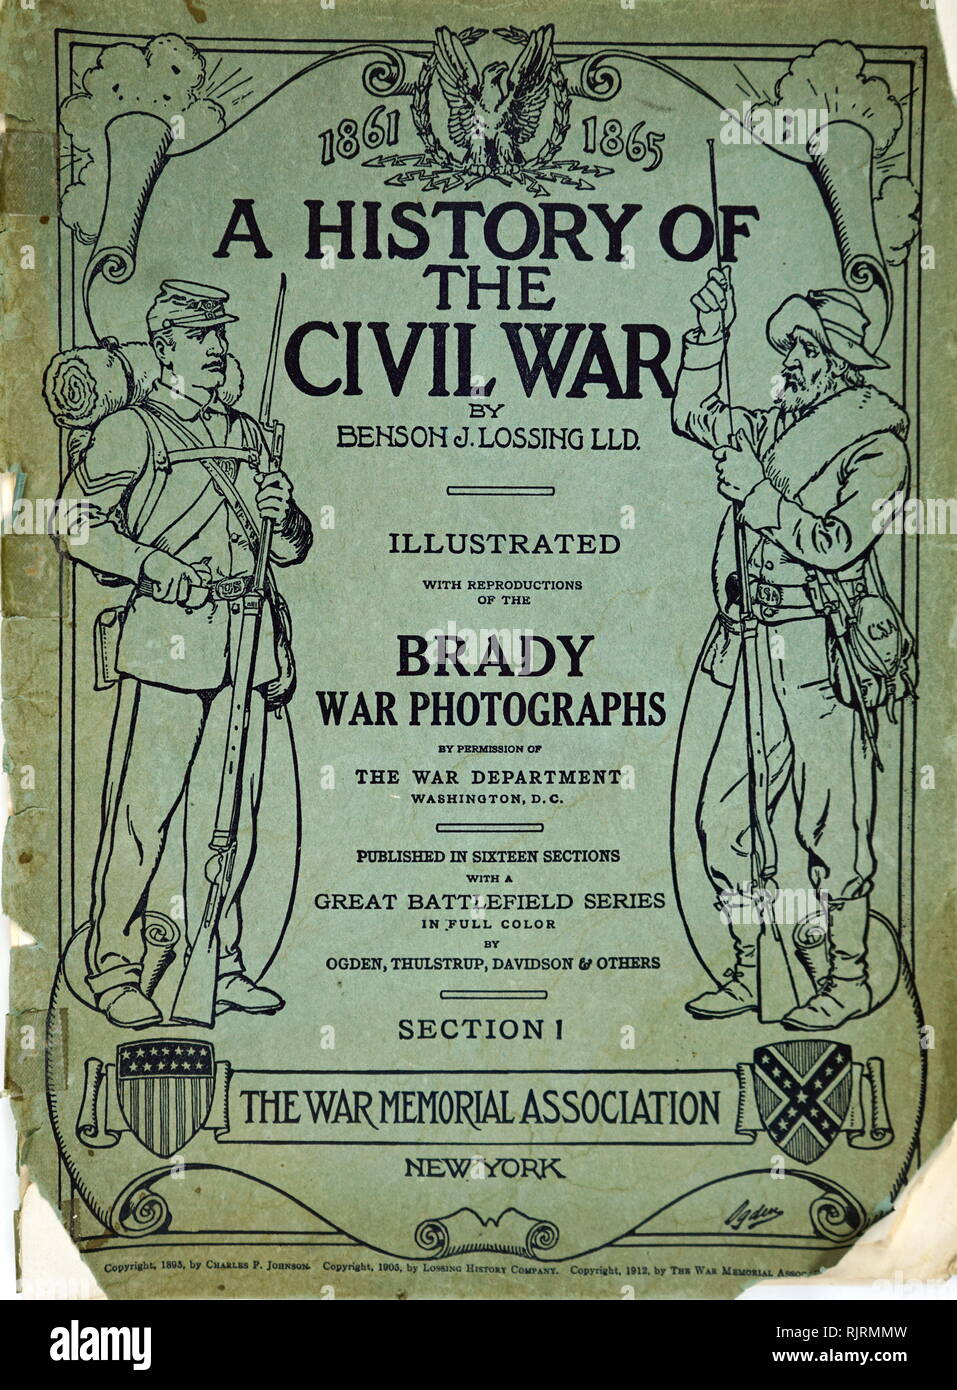 Amerikanischer Bürgerkrieg commemorative Album von Fotografien von Matthew Brady. Veröffentlicht 1865 Stockfoto